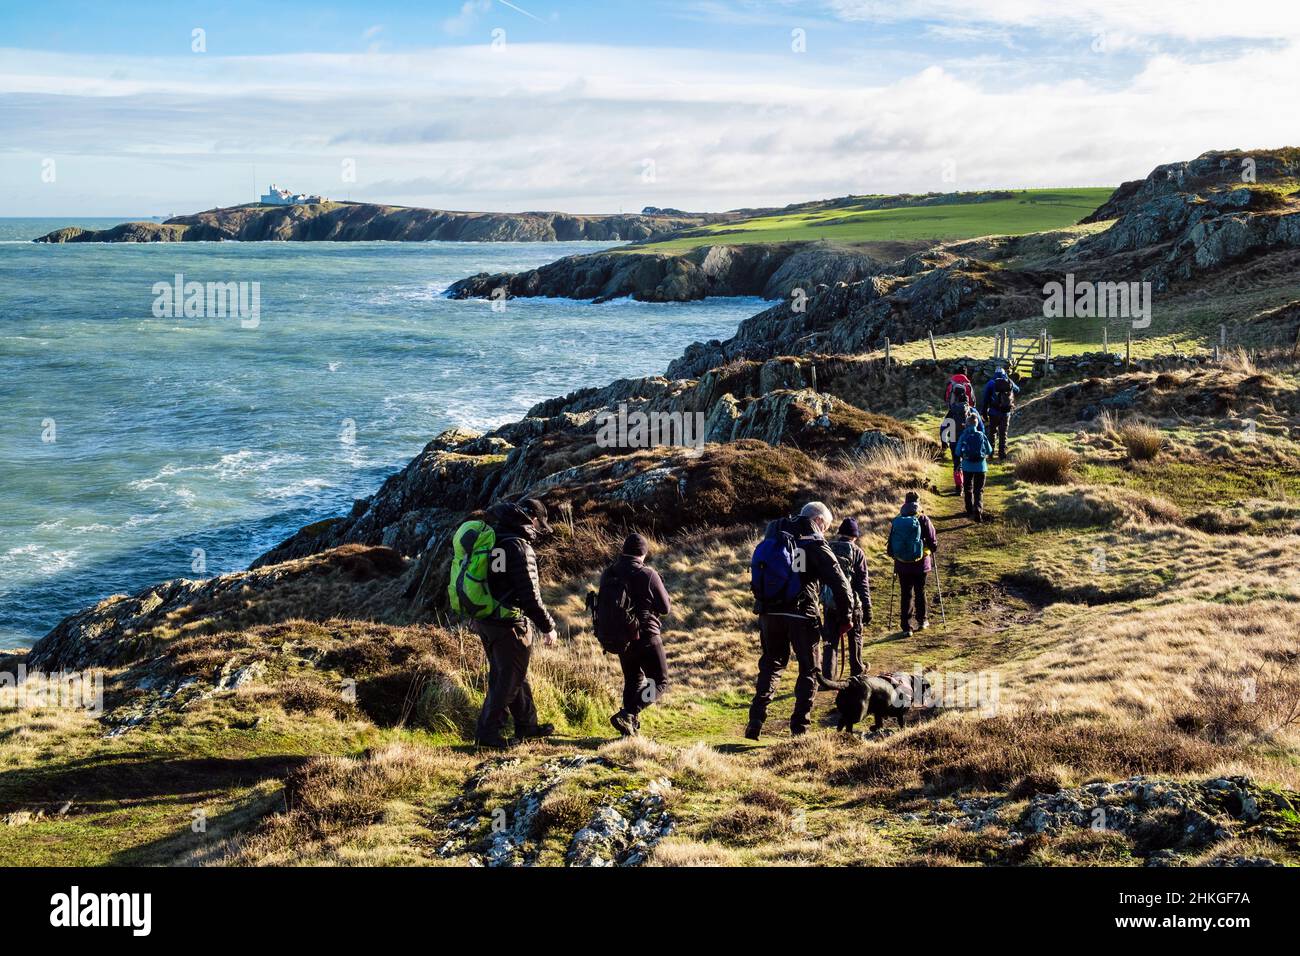 Camminatori a piedi da Amlwch a Llaneilian lungo il sentiero costiero Anglesey con vista lungo la costa rocciosa fino a Point Lynas. Isola di Anglesey, Galles del nord Regno Unito Foto Stock